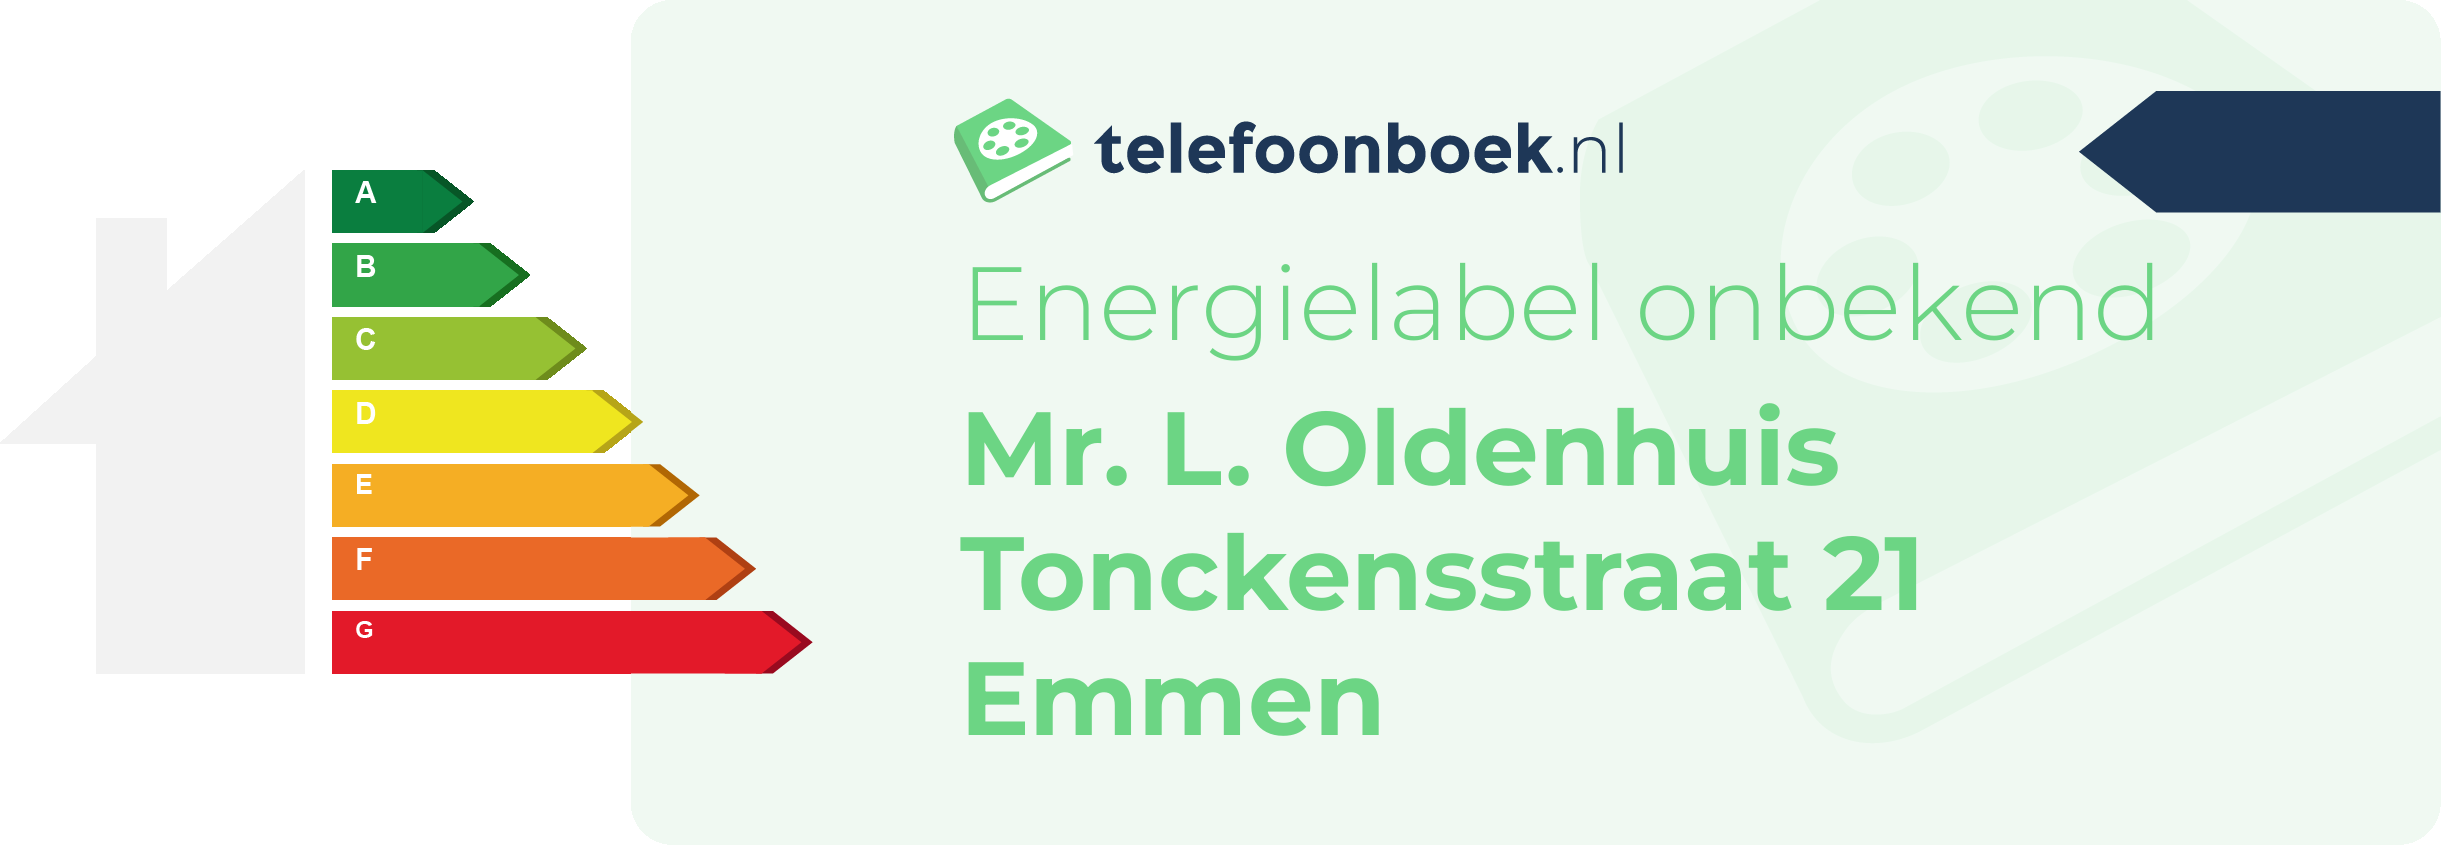 Energielabel Mr. L. Oldenhuis Tonckensstraat 21 Emmen